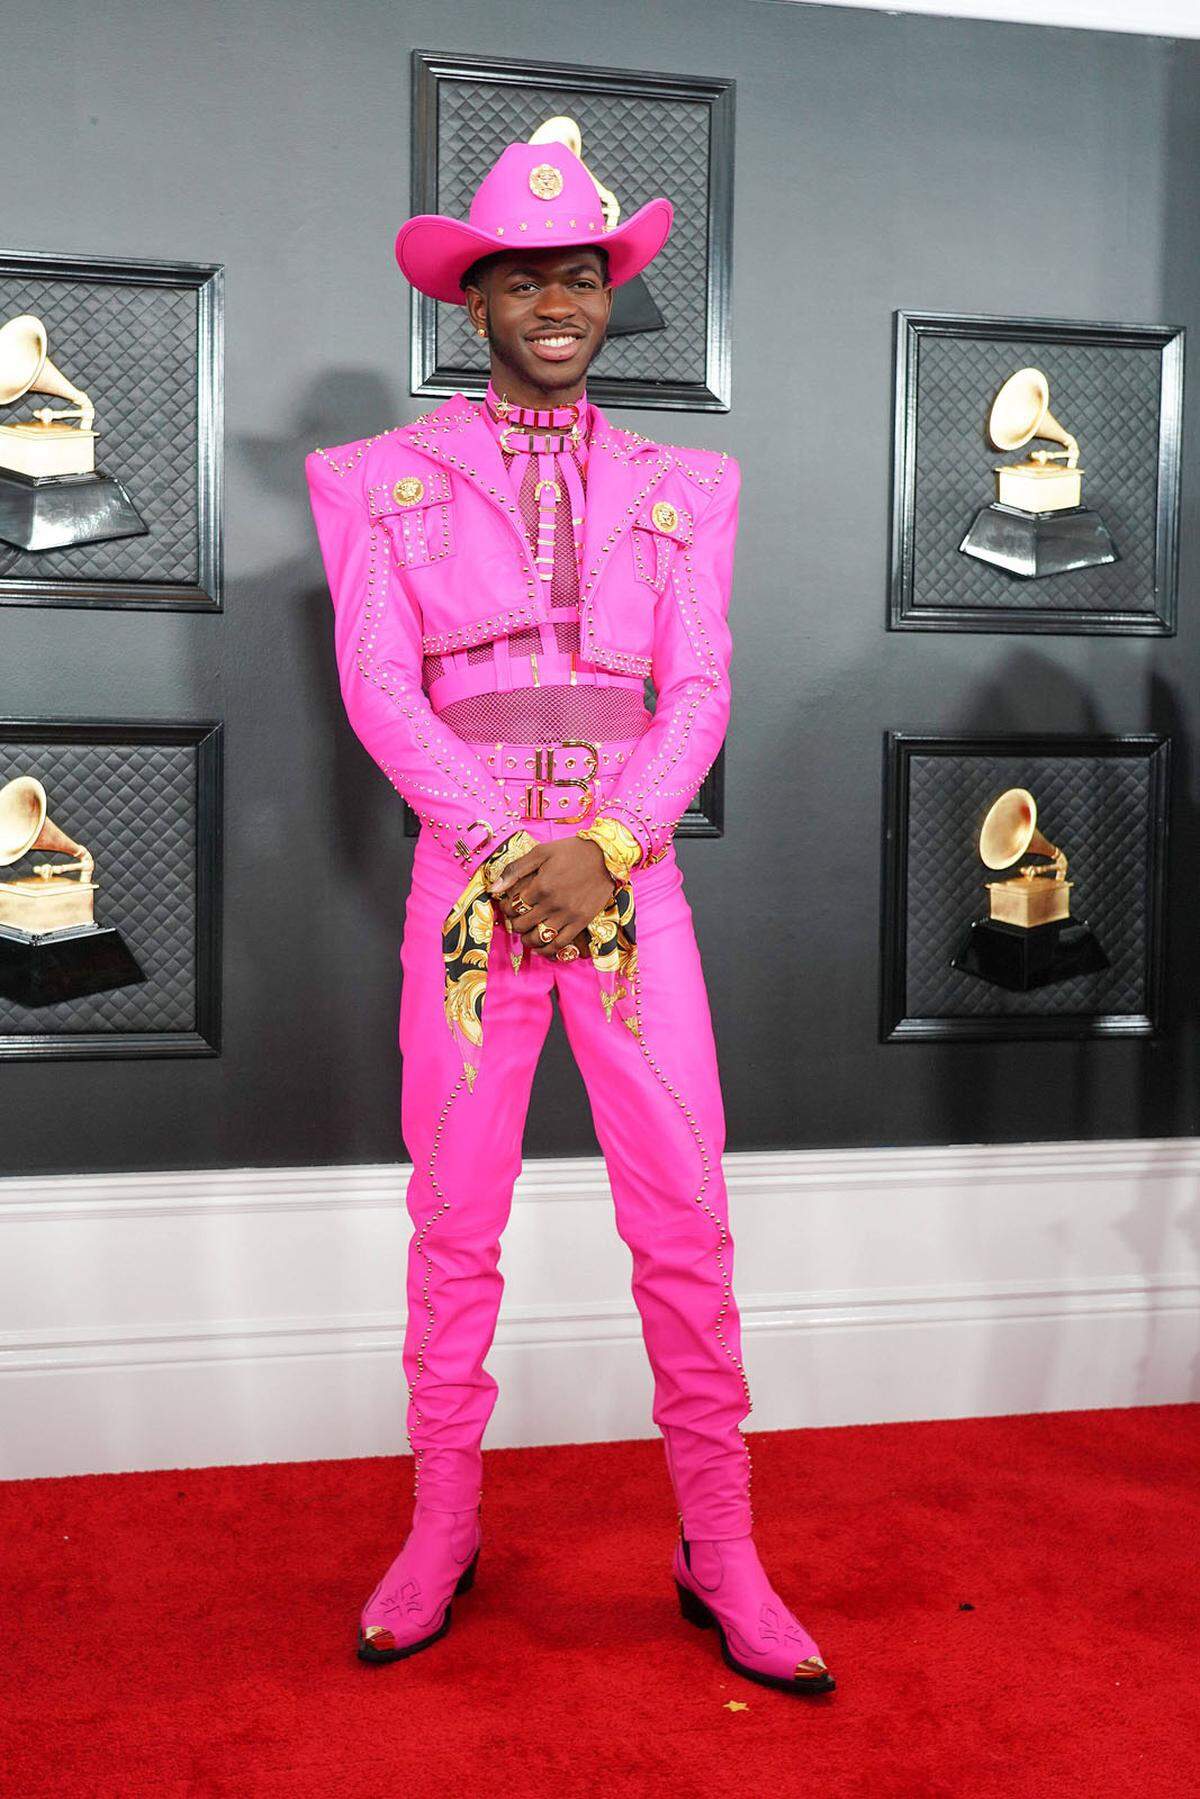 Auf Platz 3 landete Musiker Lil Nas X mit seinem pinken Cowboy-Outfit bei den Grammy Awards.